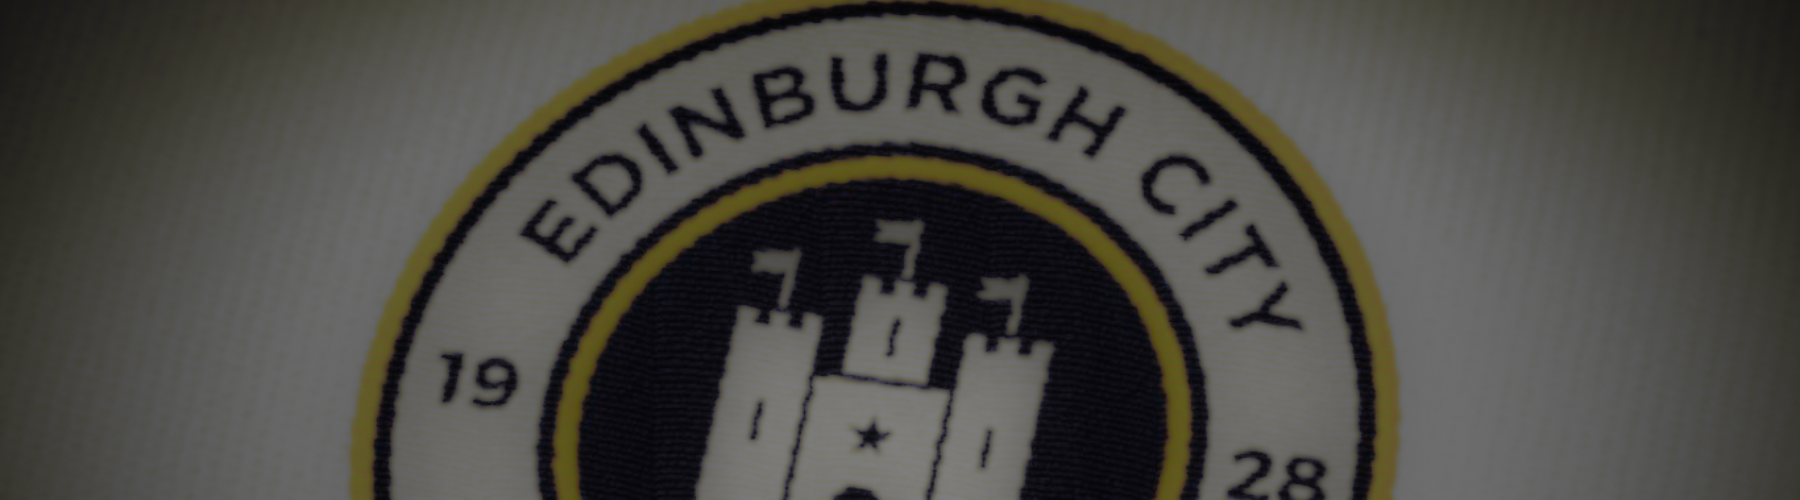 Edinburgh City FC Training Range